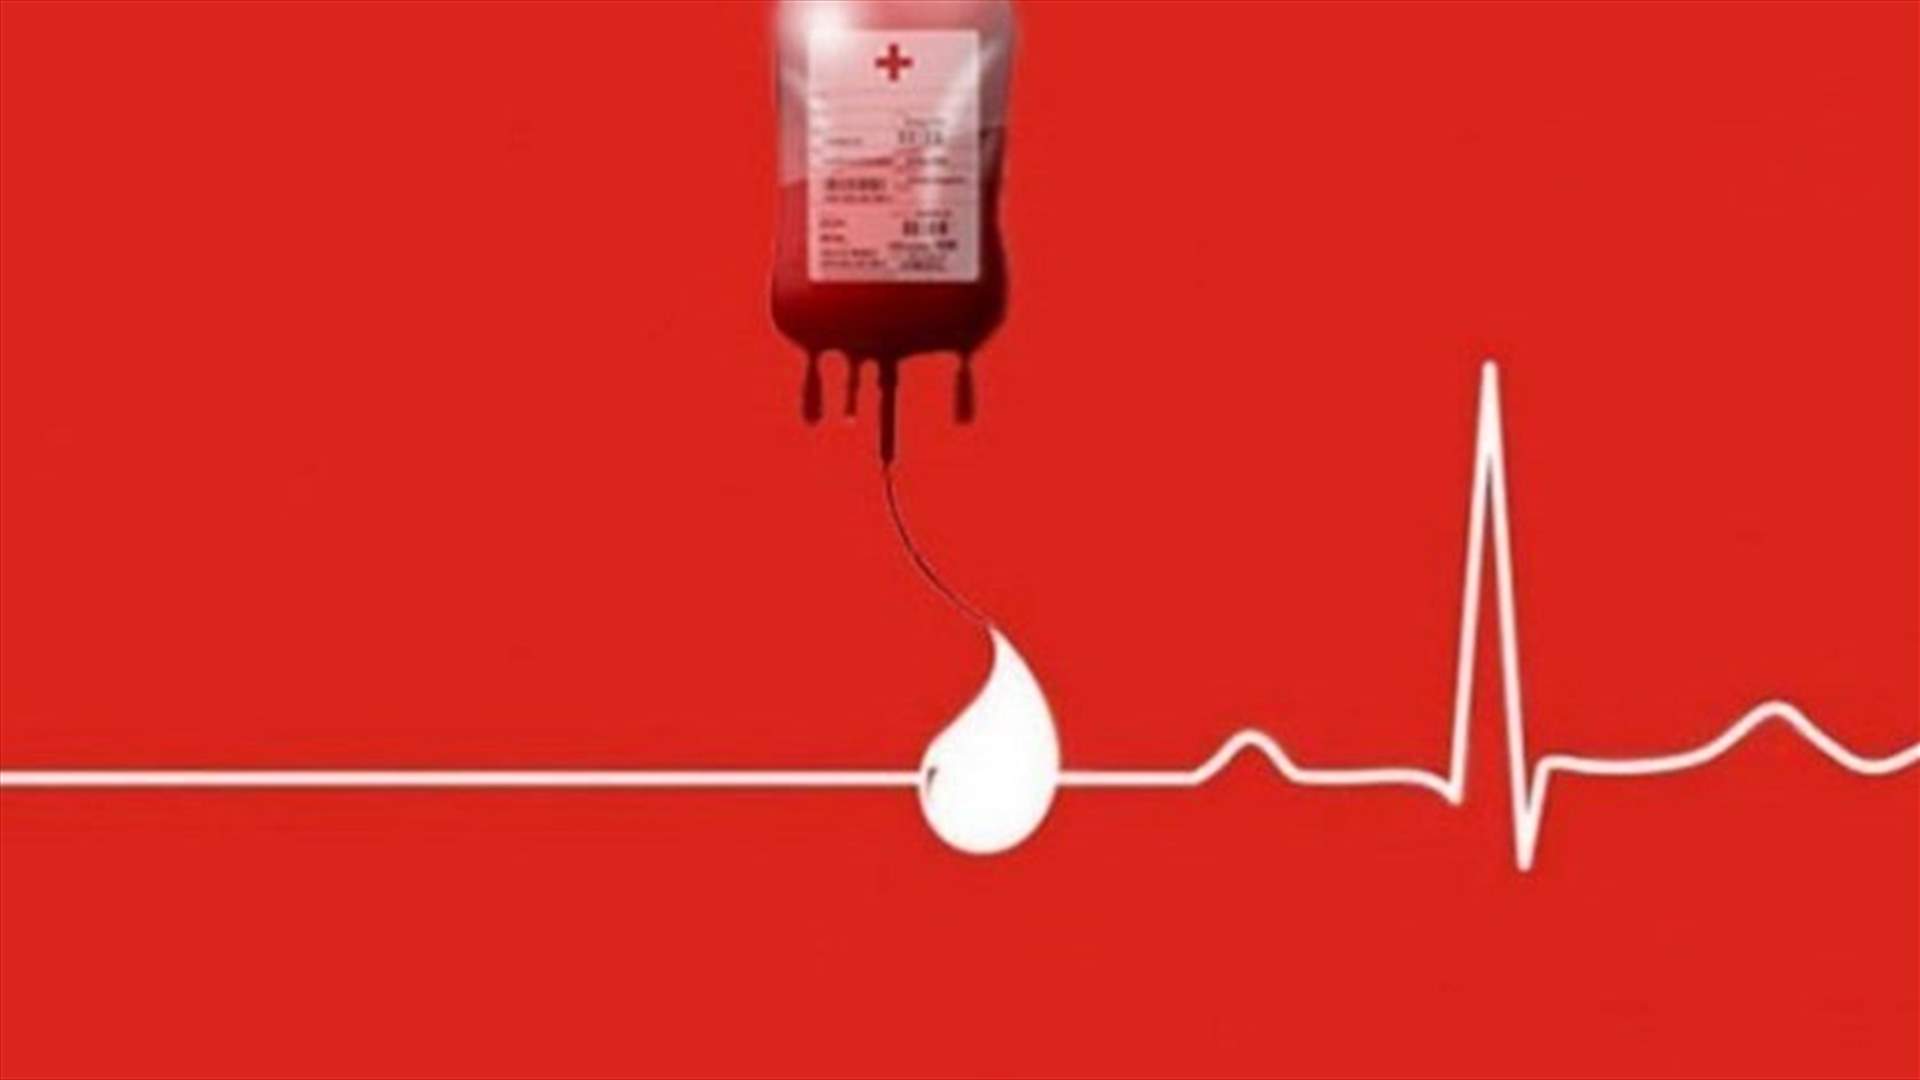 مريض بحاجة ماسة لوحدتَي دم من فئة A-  في مستشفى رزق الجامعي في الأشرفية، للتبرع الاتصال على 03561678